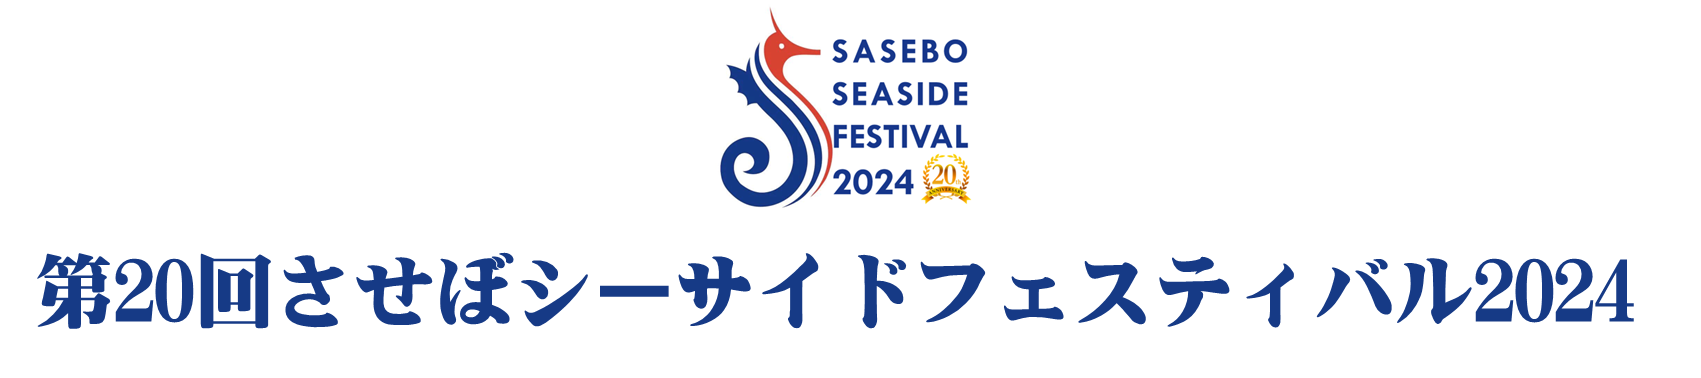 SASEBO SEASIDE FESTIVAL 2024